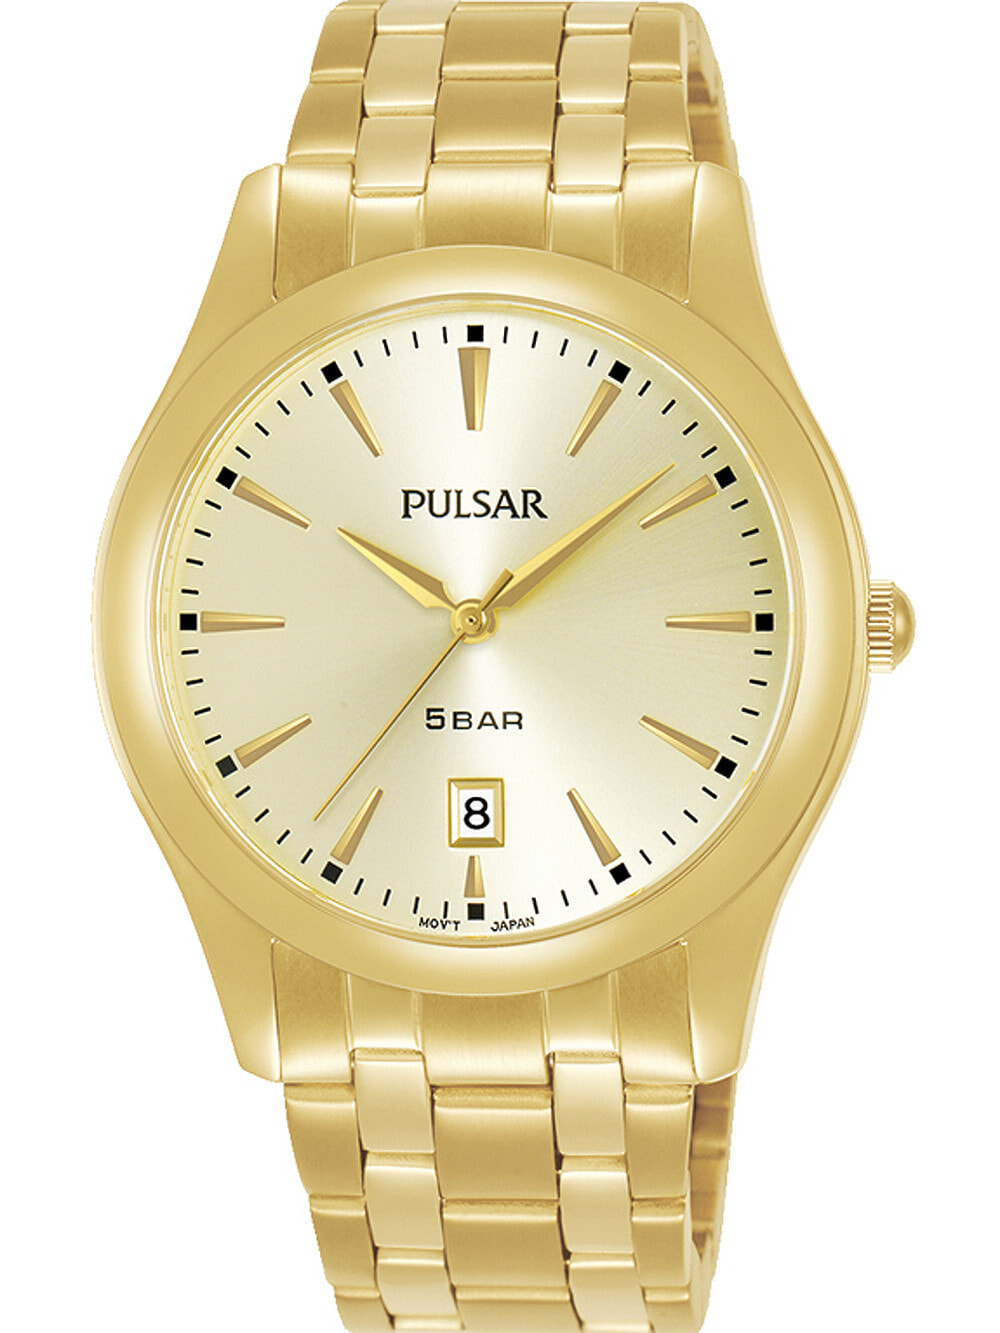 Мужские наручные часы с золотым браслетом Pulsar PG8316X1 classic mens 38mm 5ATM